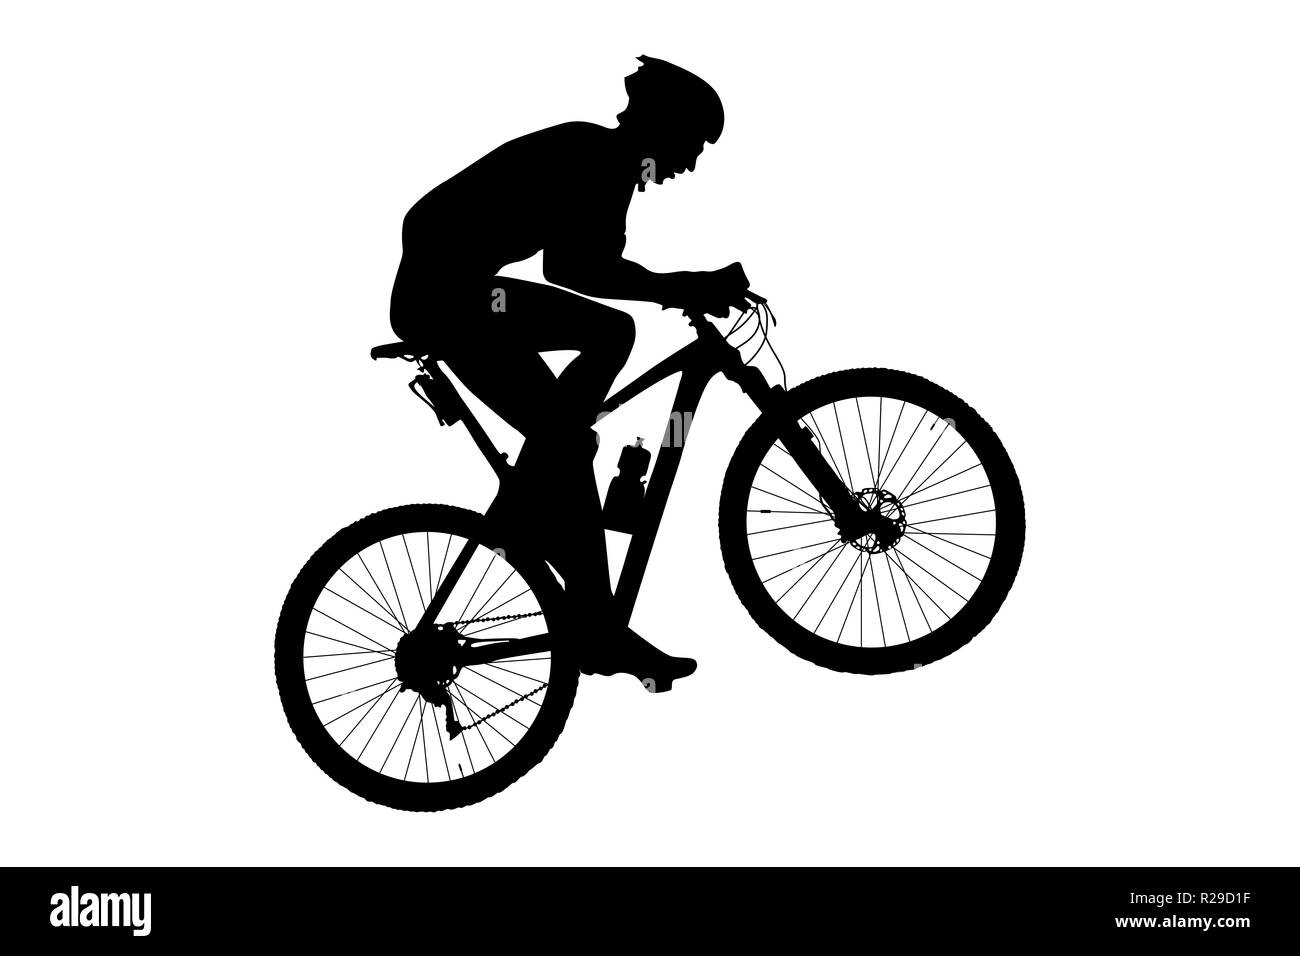 Cycliste homme mountain biker riding uphill silhouette noire Banque D'Images